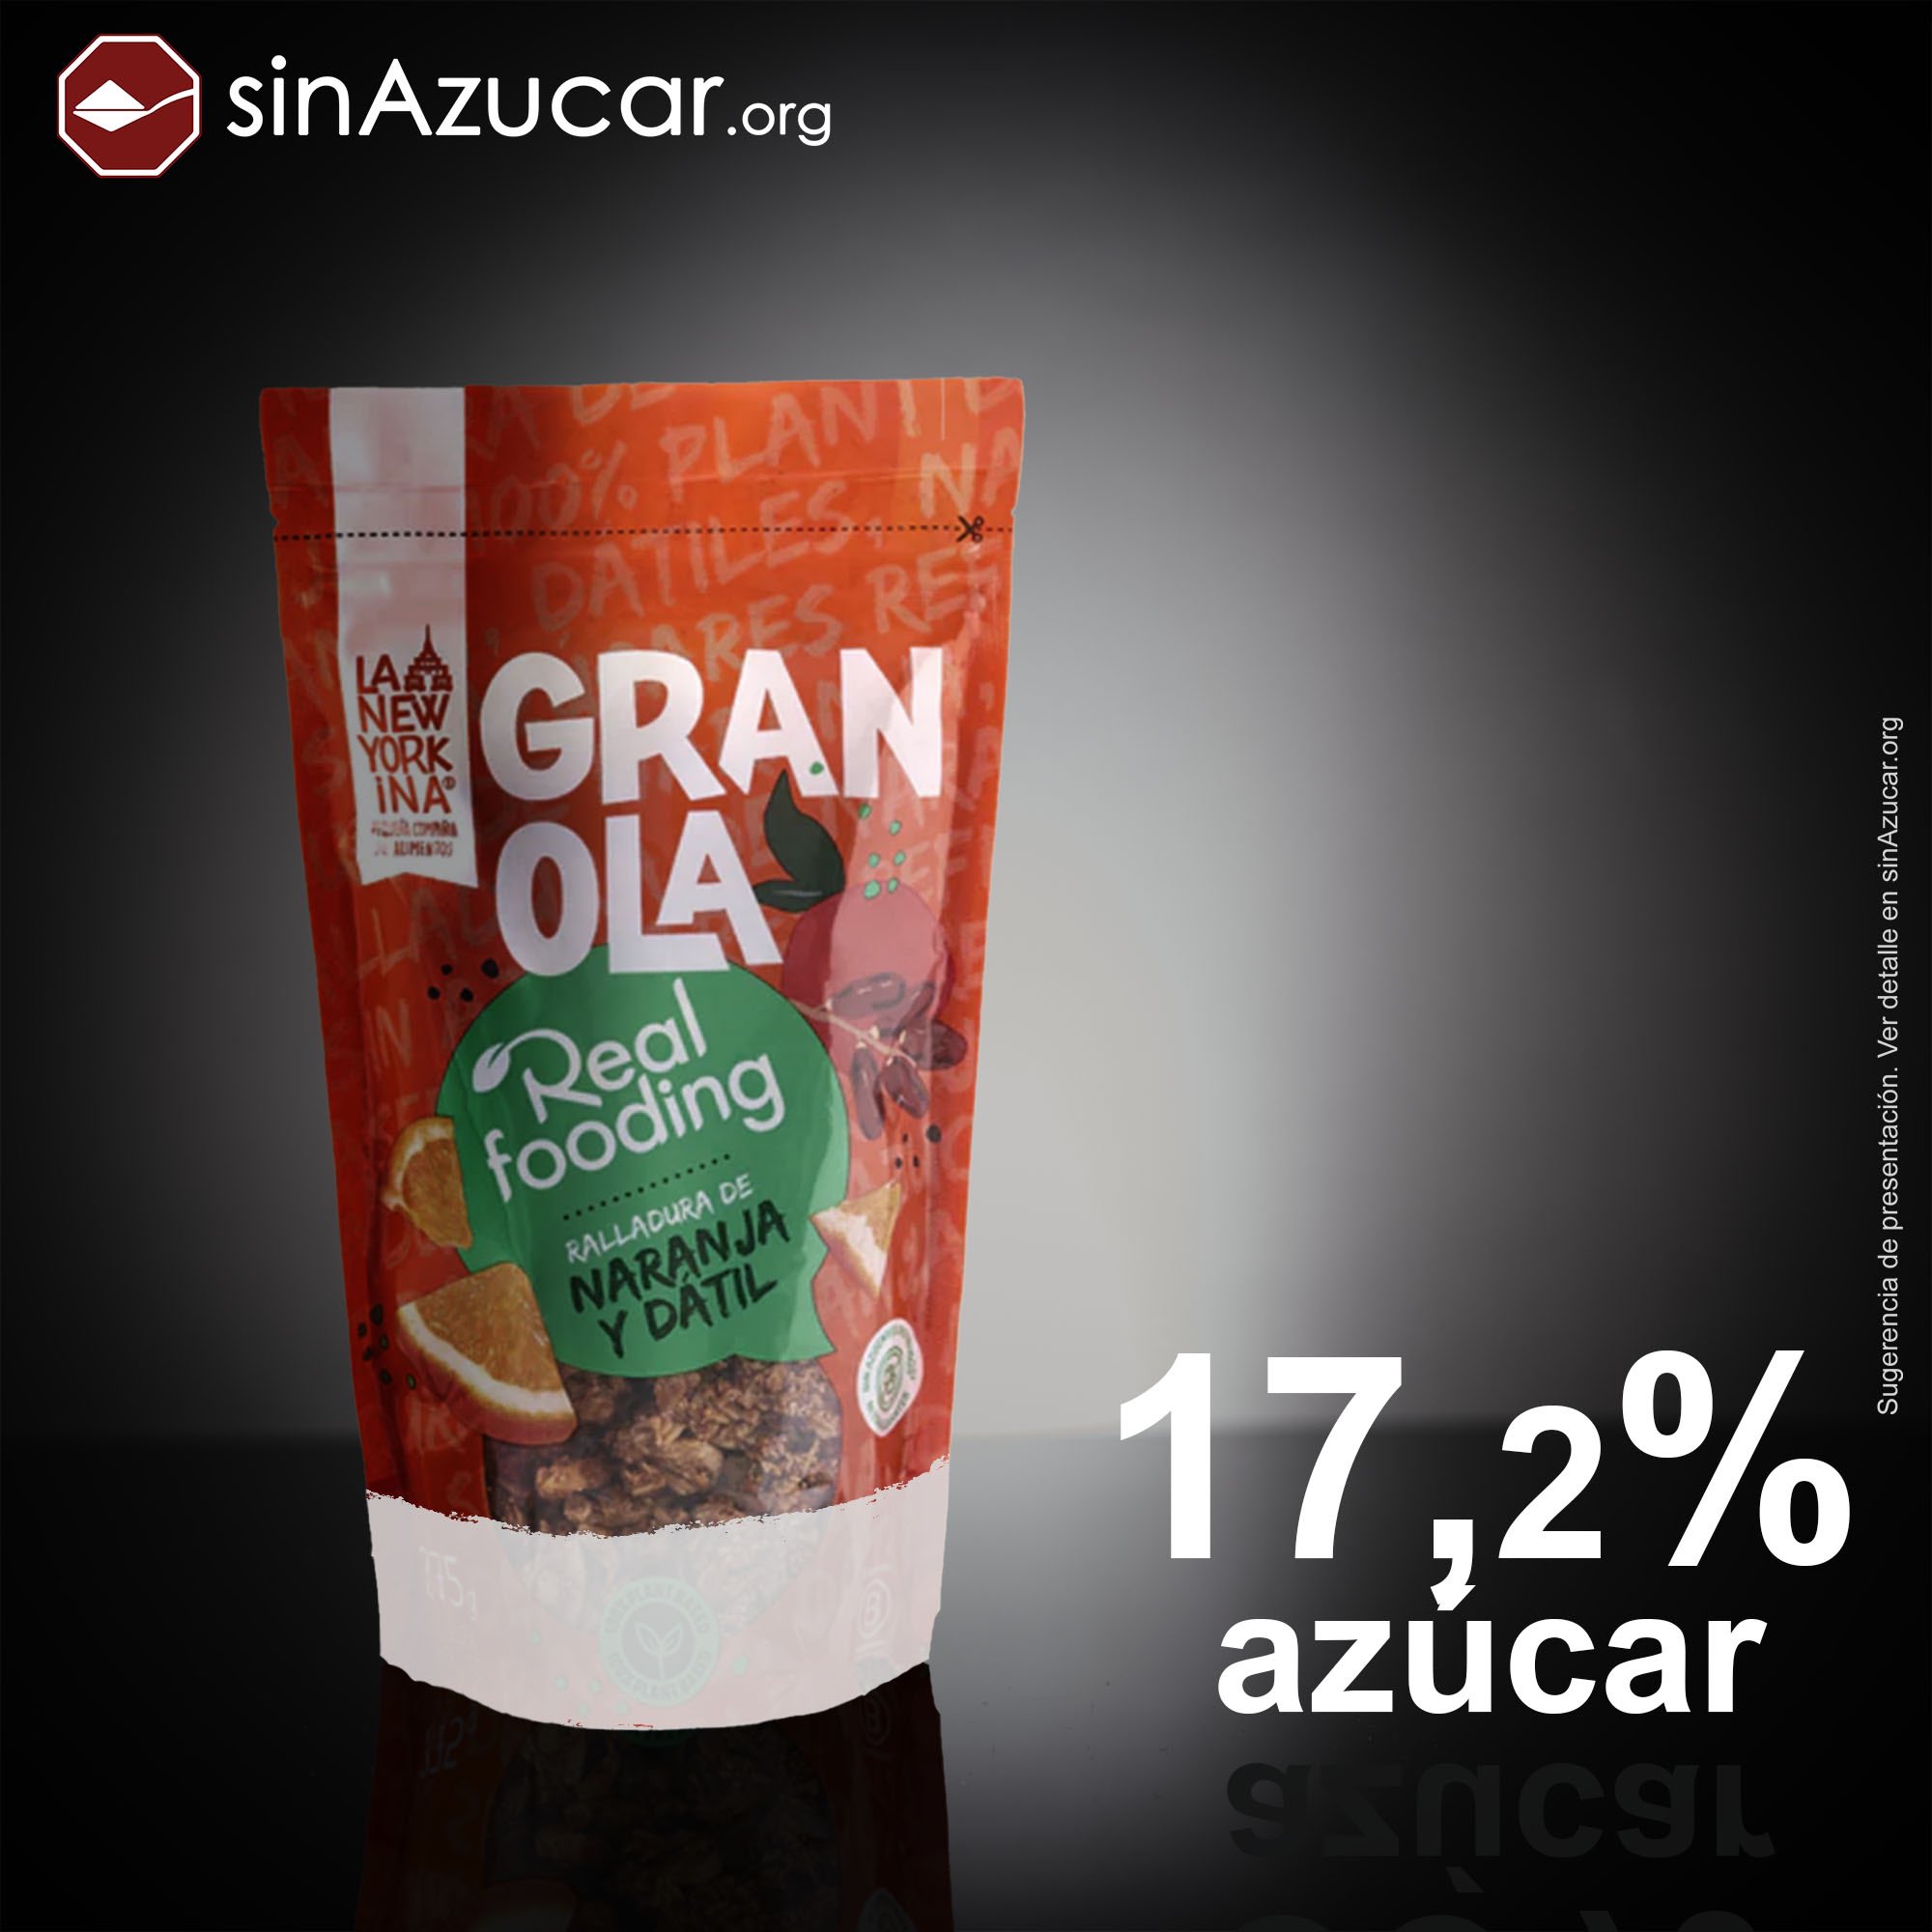 sinAzucar.org on X: La granola Realfooding contiene un 17,2% de